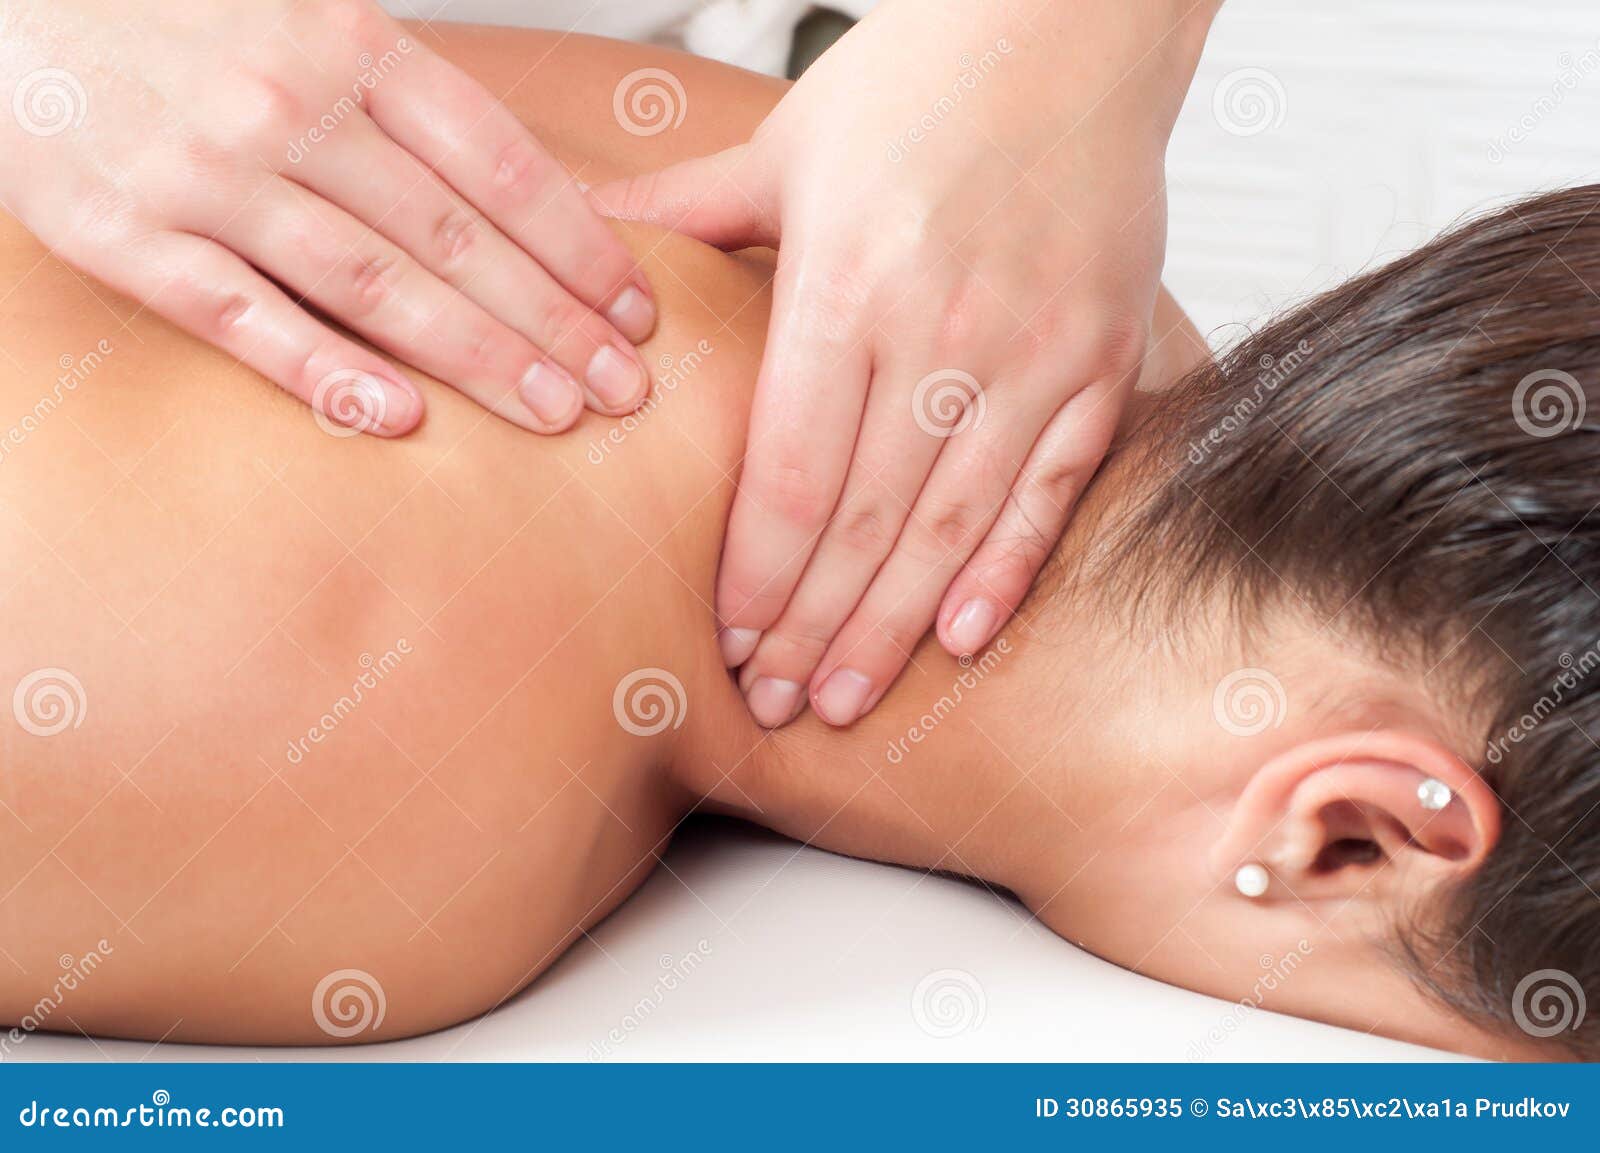 массаж спины грудью фото 27